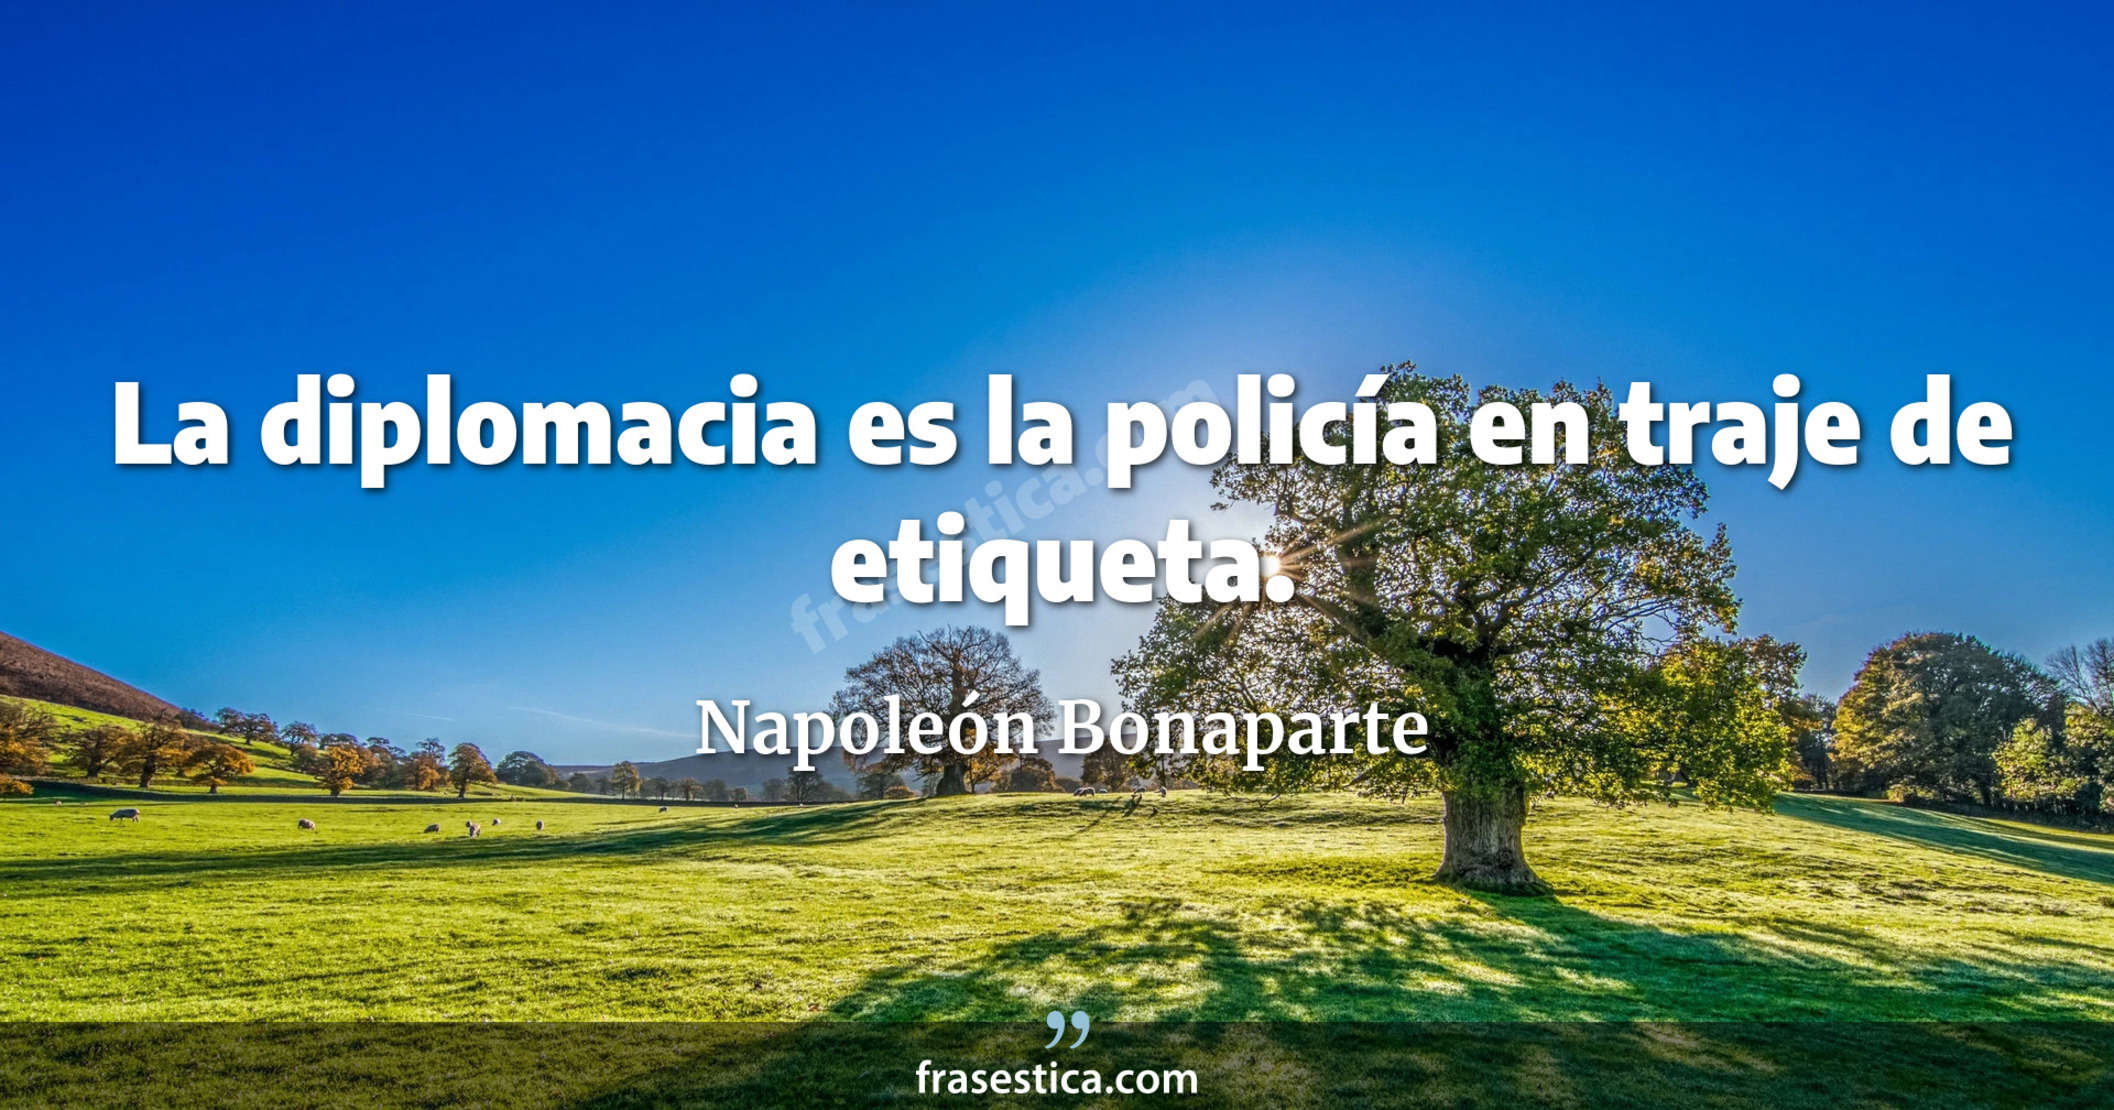 La diplomacia es la policía en traje de etiqueta. - Napoleón Bonaparte